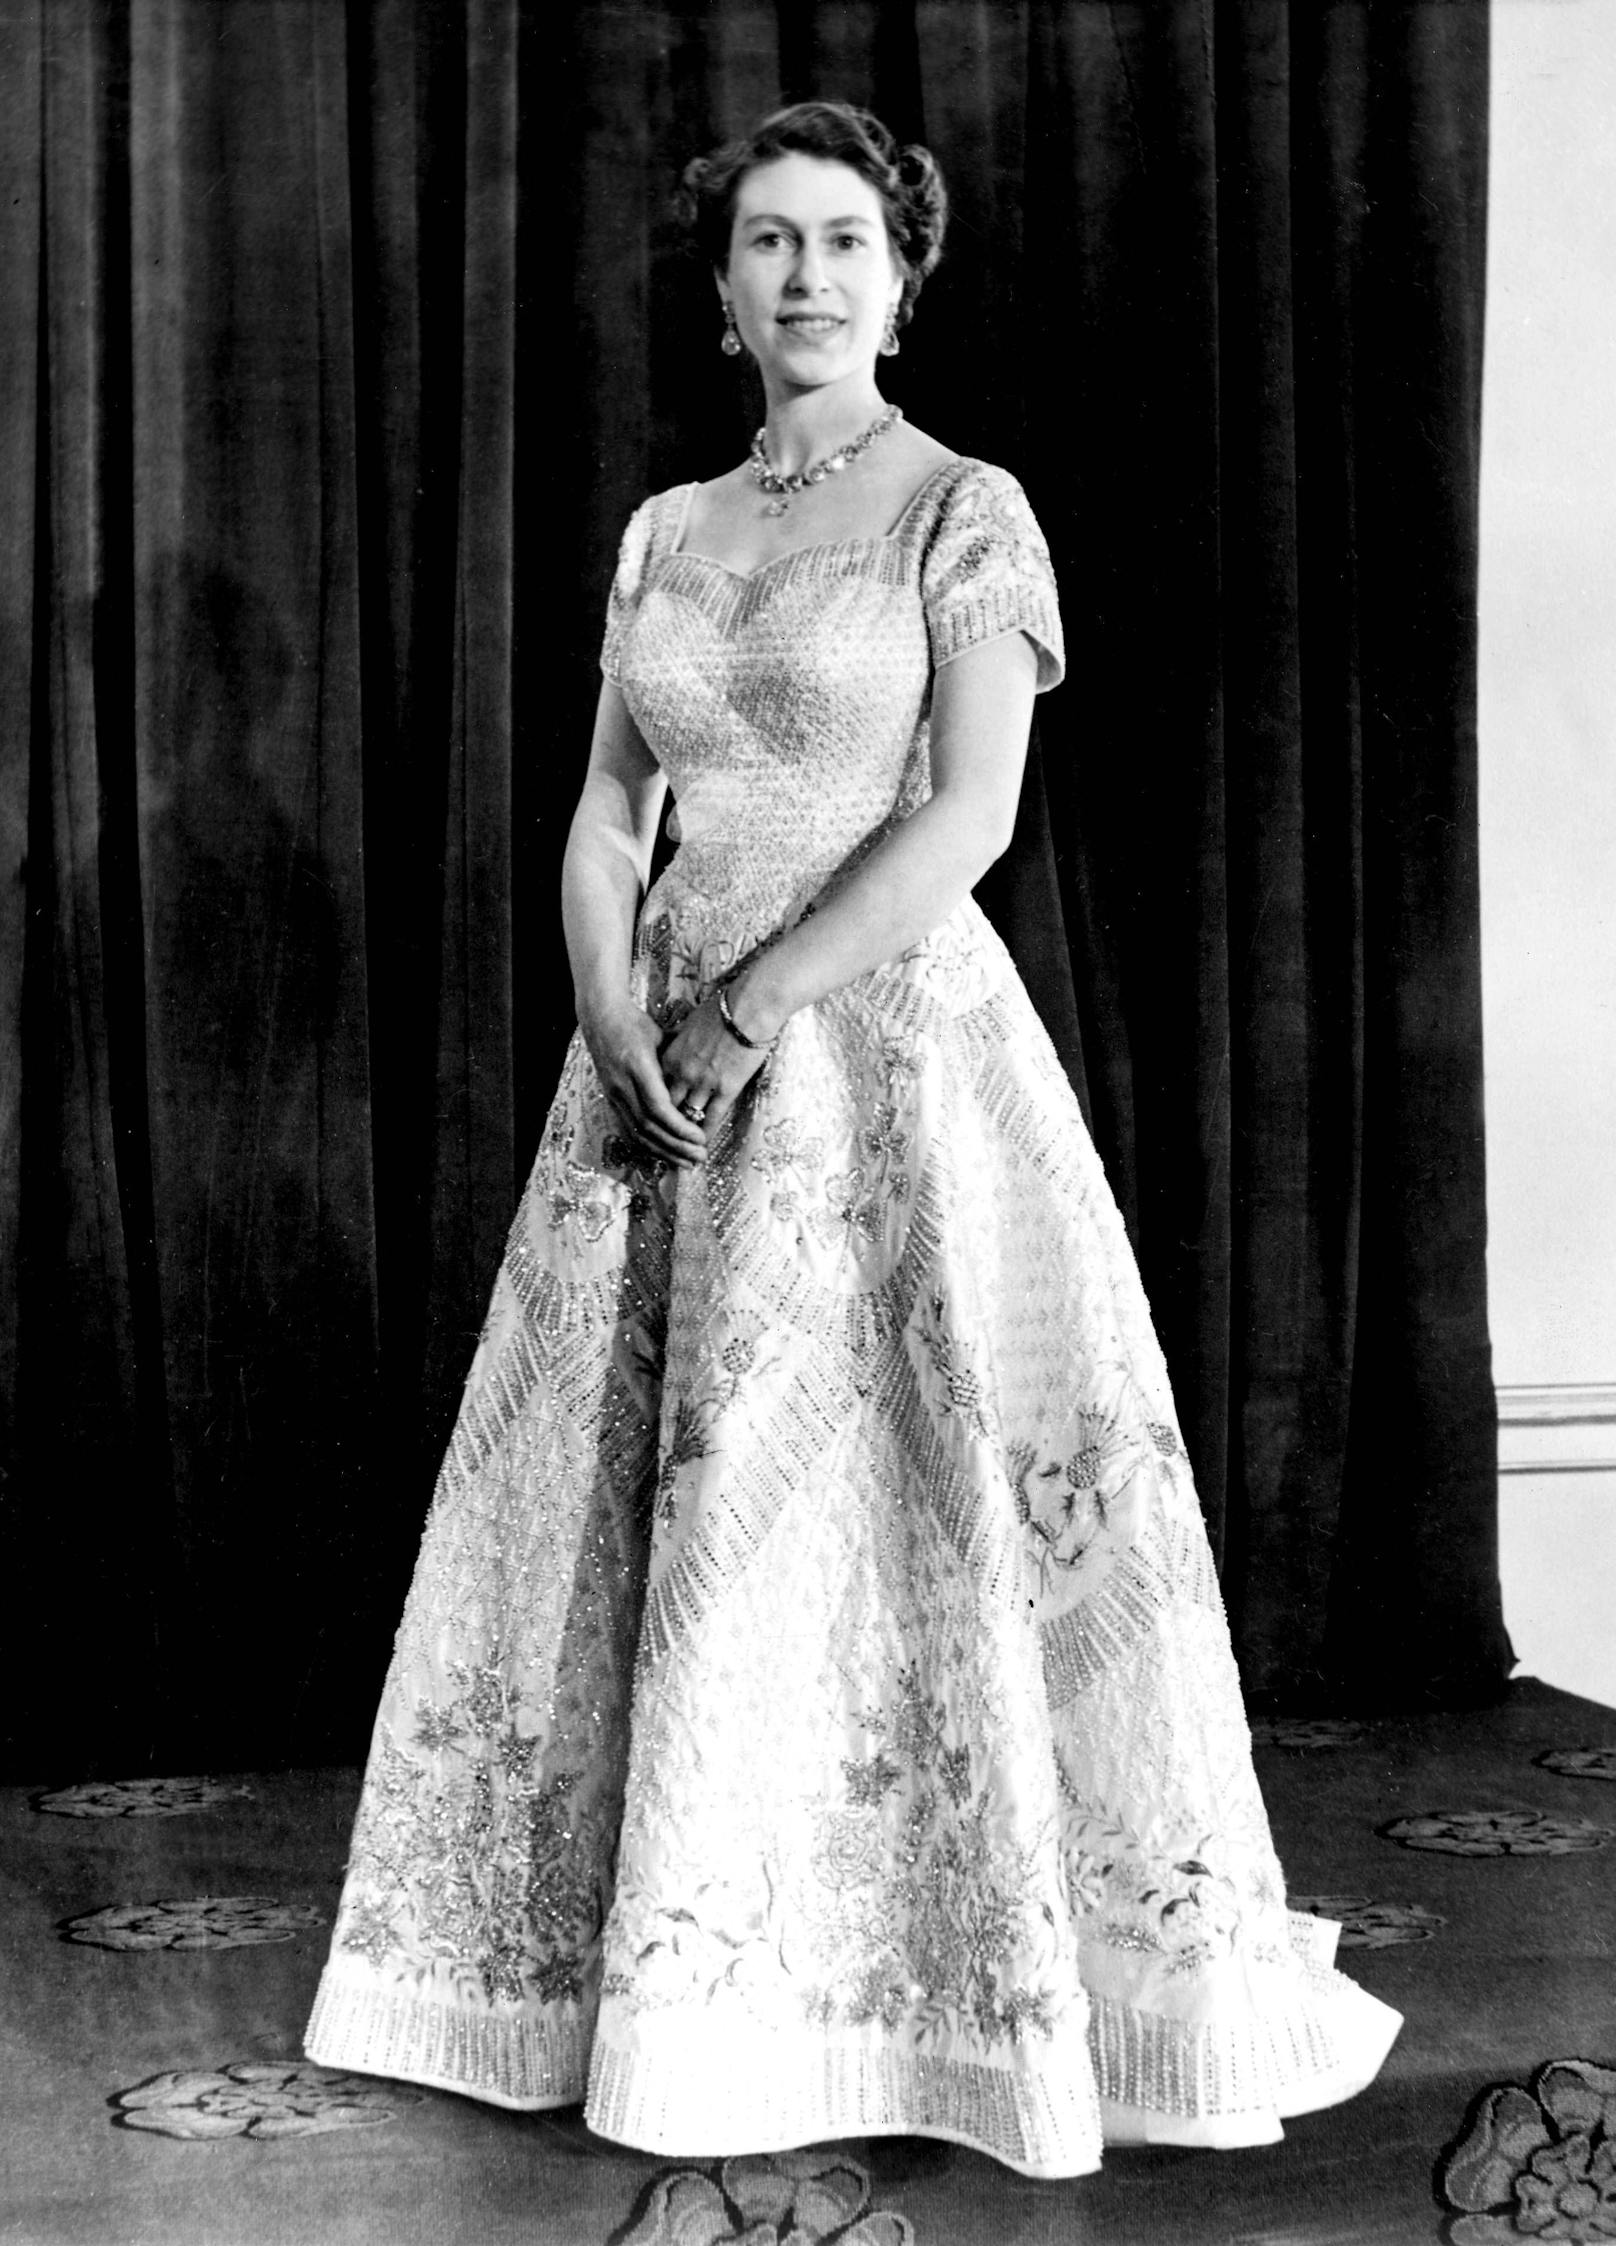 Designed von Sir Norman Hartnell, wurde die Queen in einem aufwändig bestickten Kleid 1953 gekrönt. Sie war 25 Jahre alt.